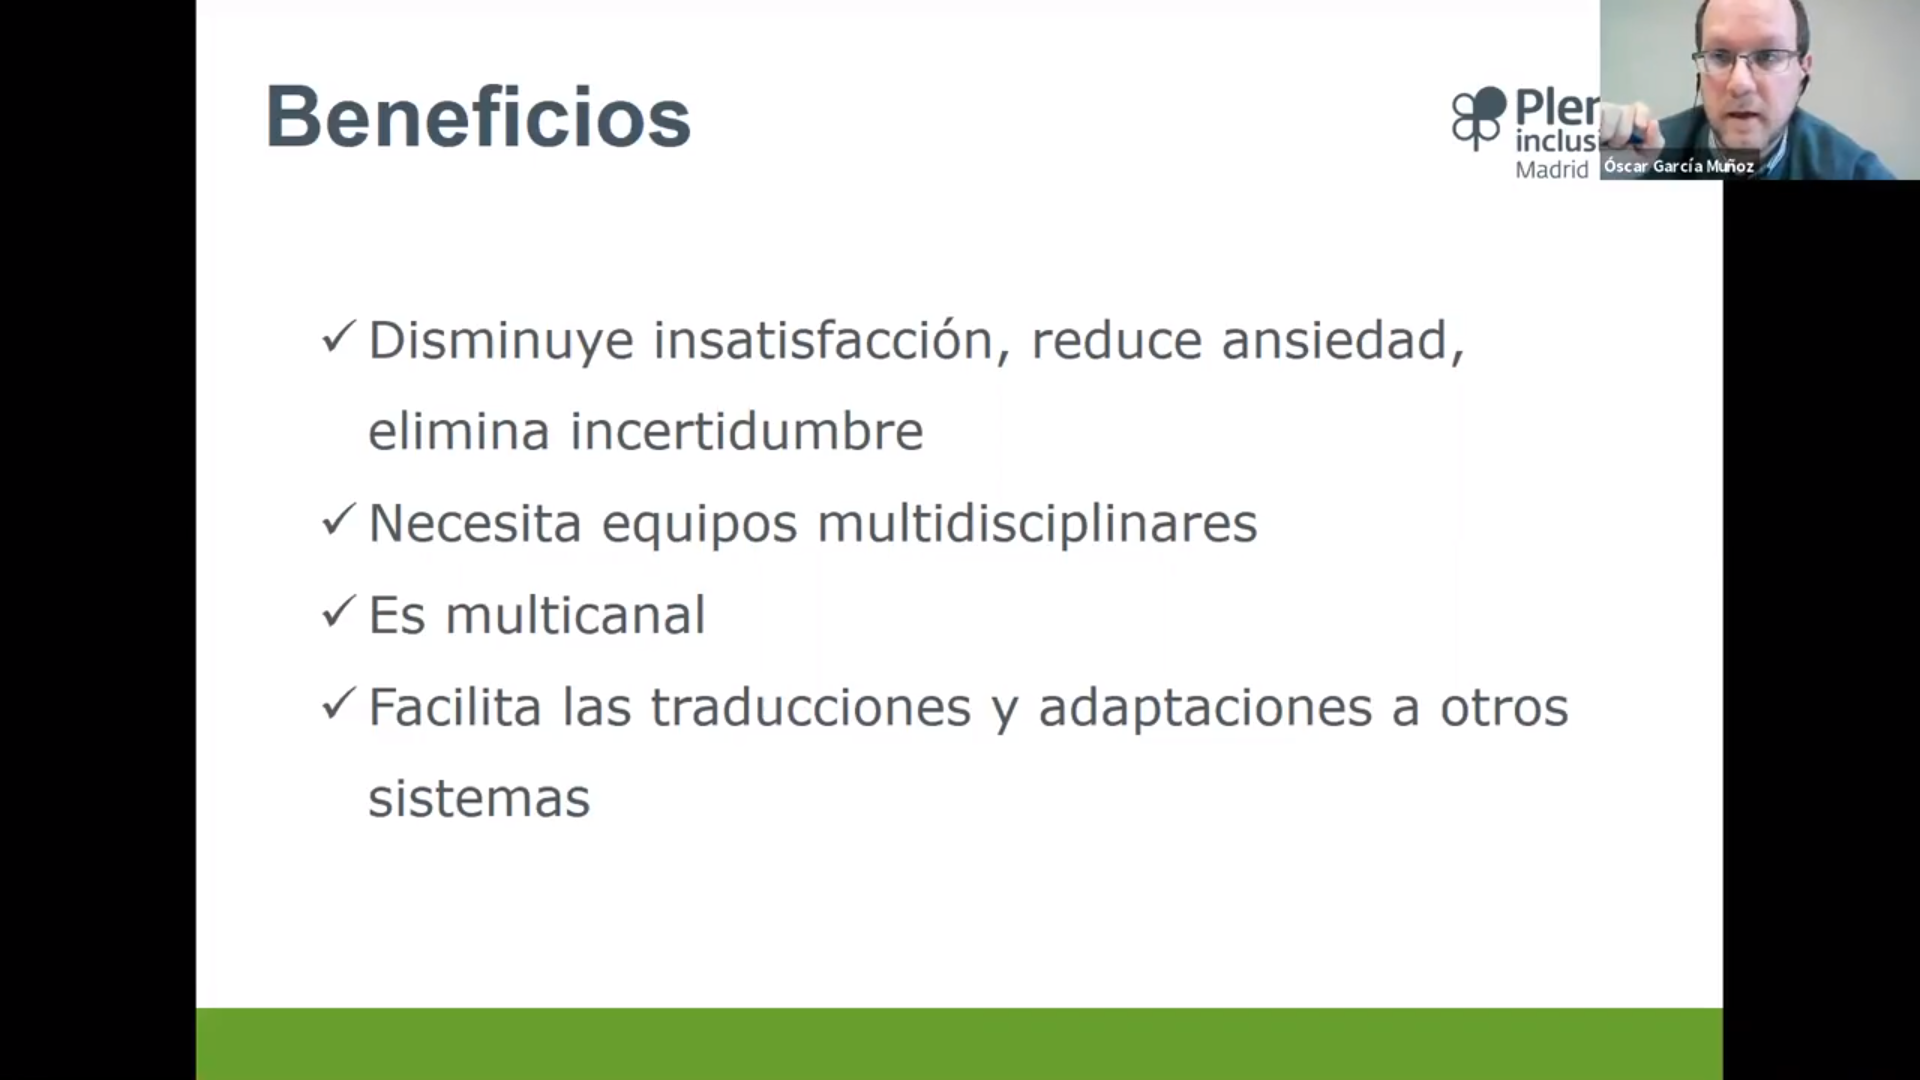 Diapositiva de la presentación de Oscar García Muñoz. El texto dice: Beneficios. Disminuye insatisfacción, reduce ansiedad, elimina incertidumbre. Necesita equipos multidisciplinares. Es multicanal. Facilita las traducciones y adaptaciones a otros sistemas.